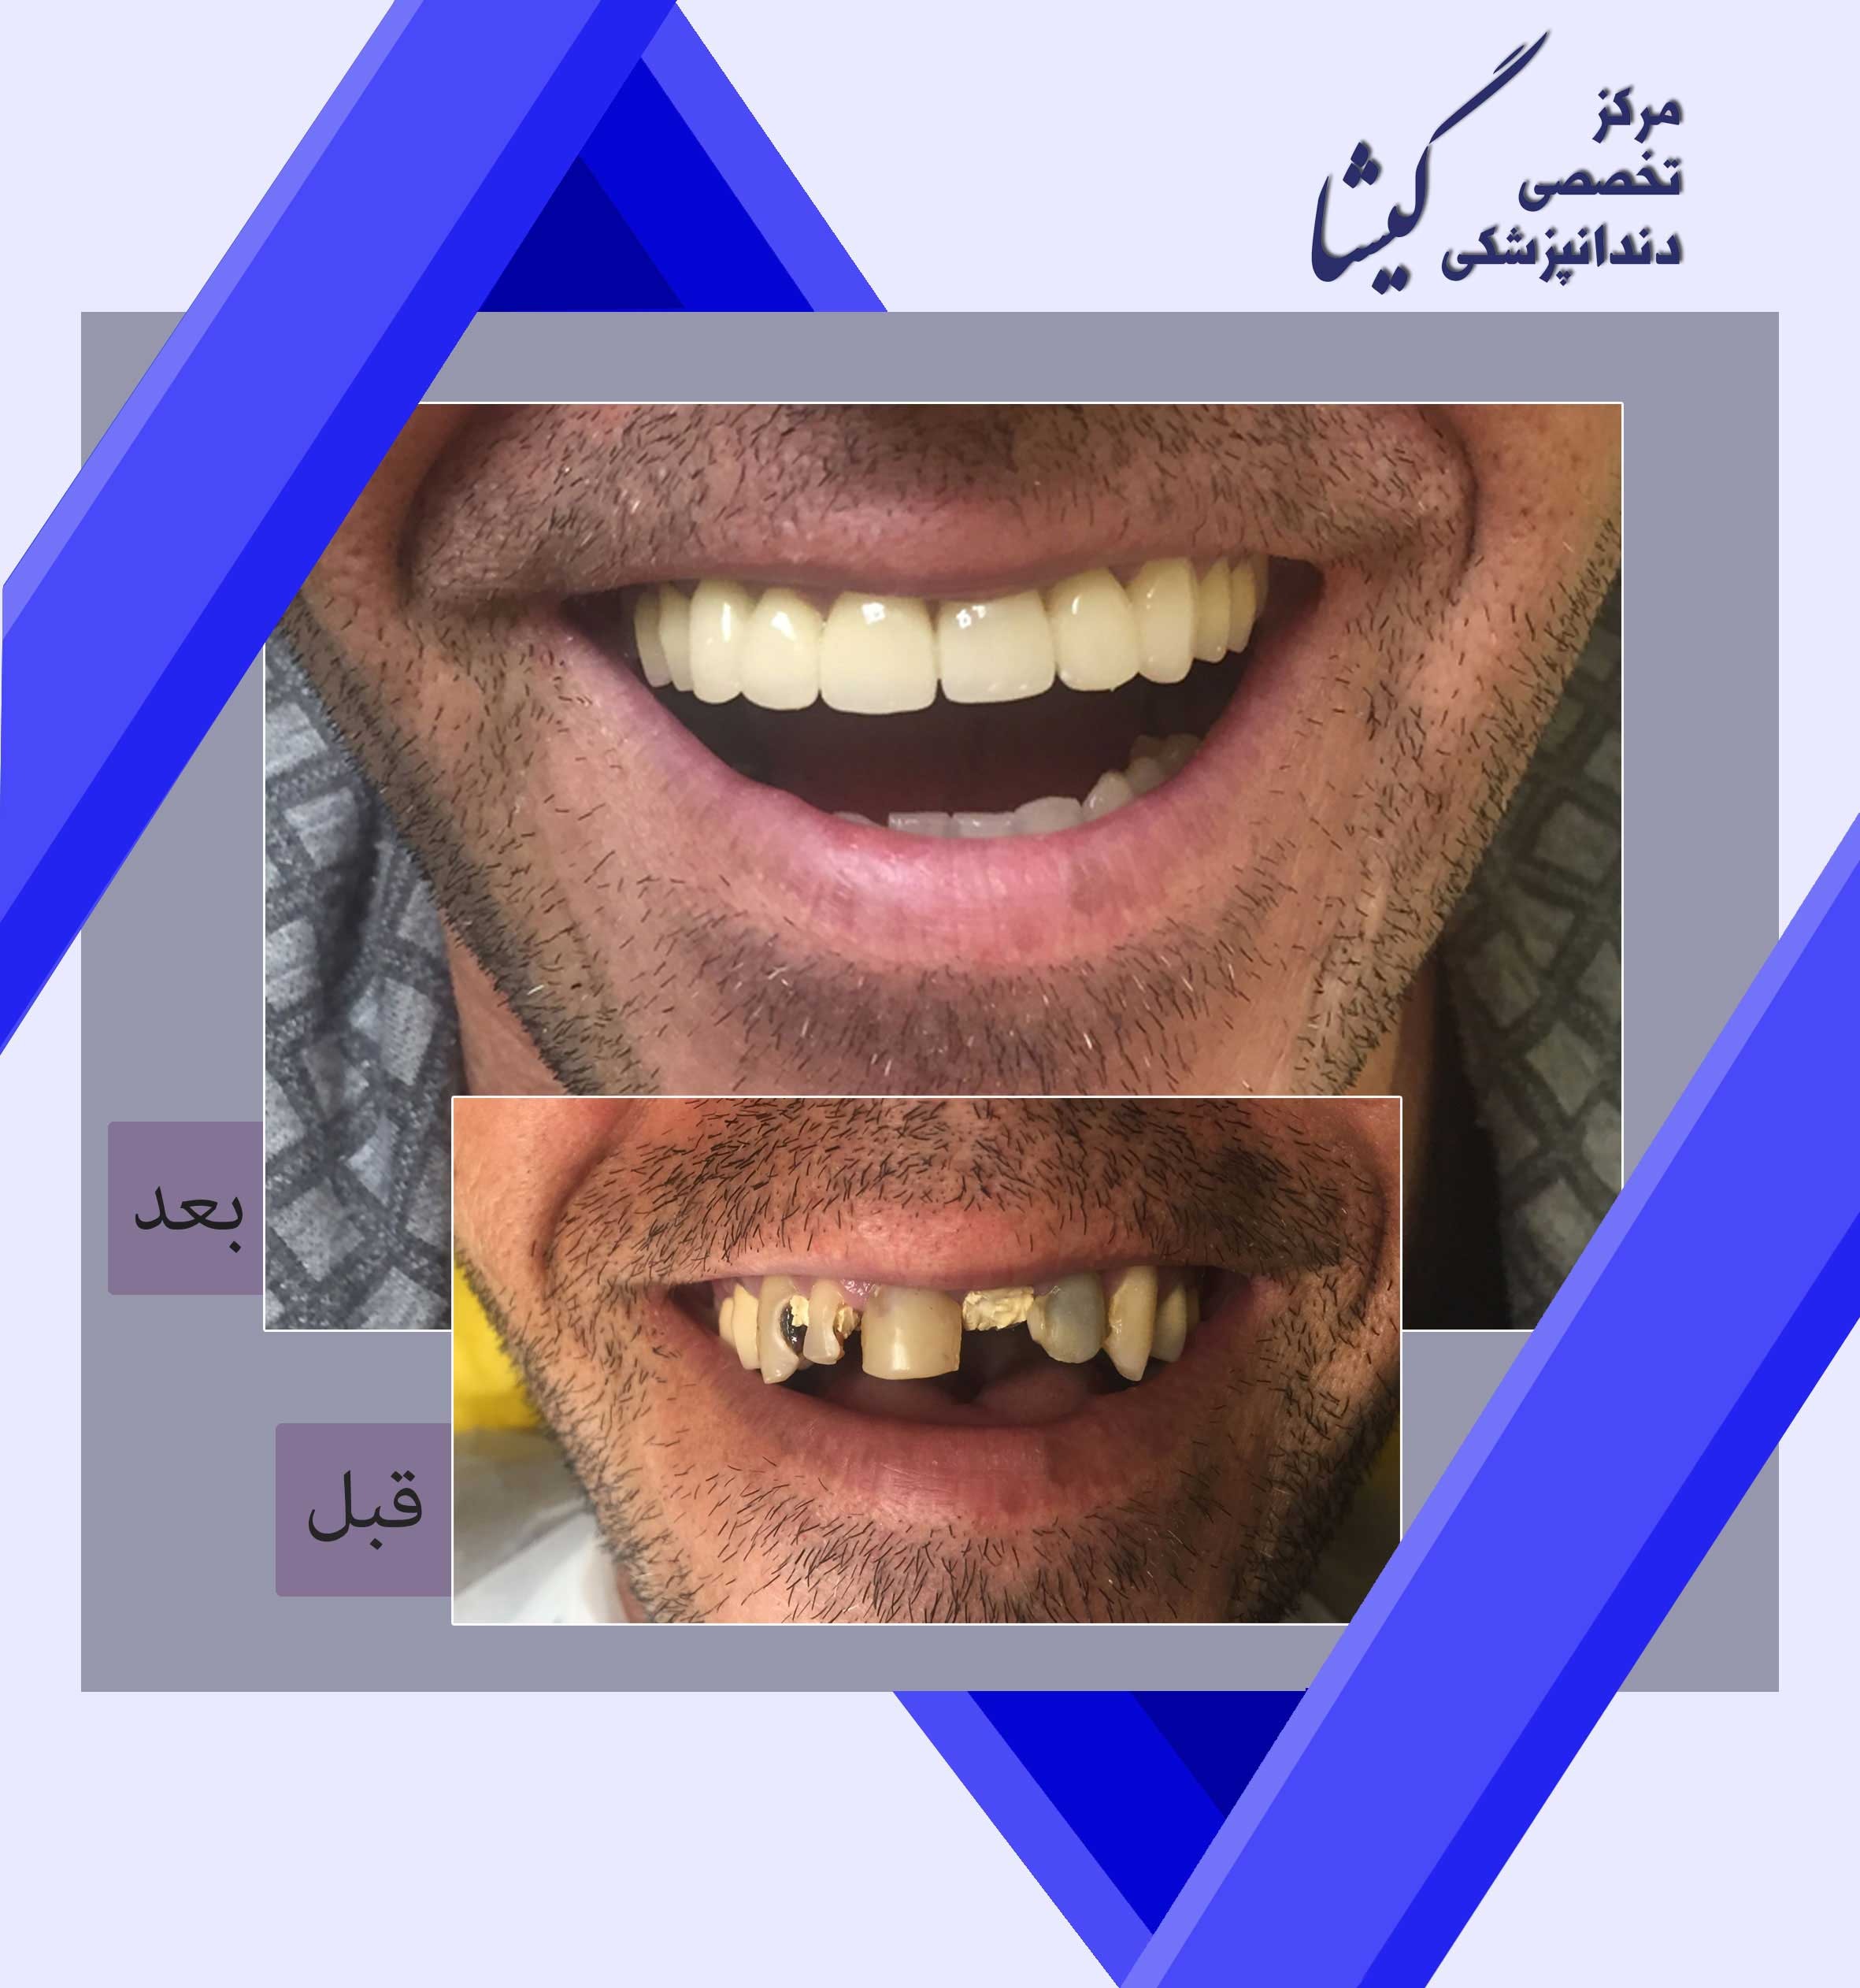 بازسازی دندانهای جلویی به شدت پوسیده با روکشهای زیرکونیا و لبخند صمیمانه بیمار عزیزمان! لبخند شما تخصص ماست.